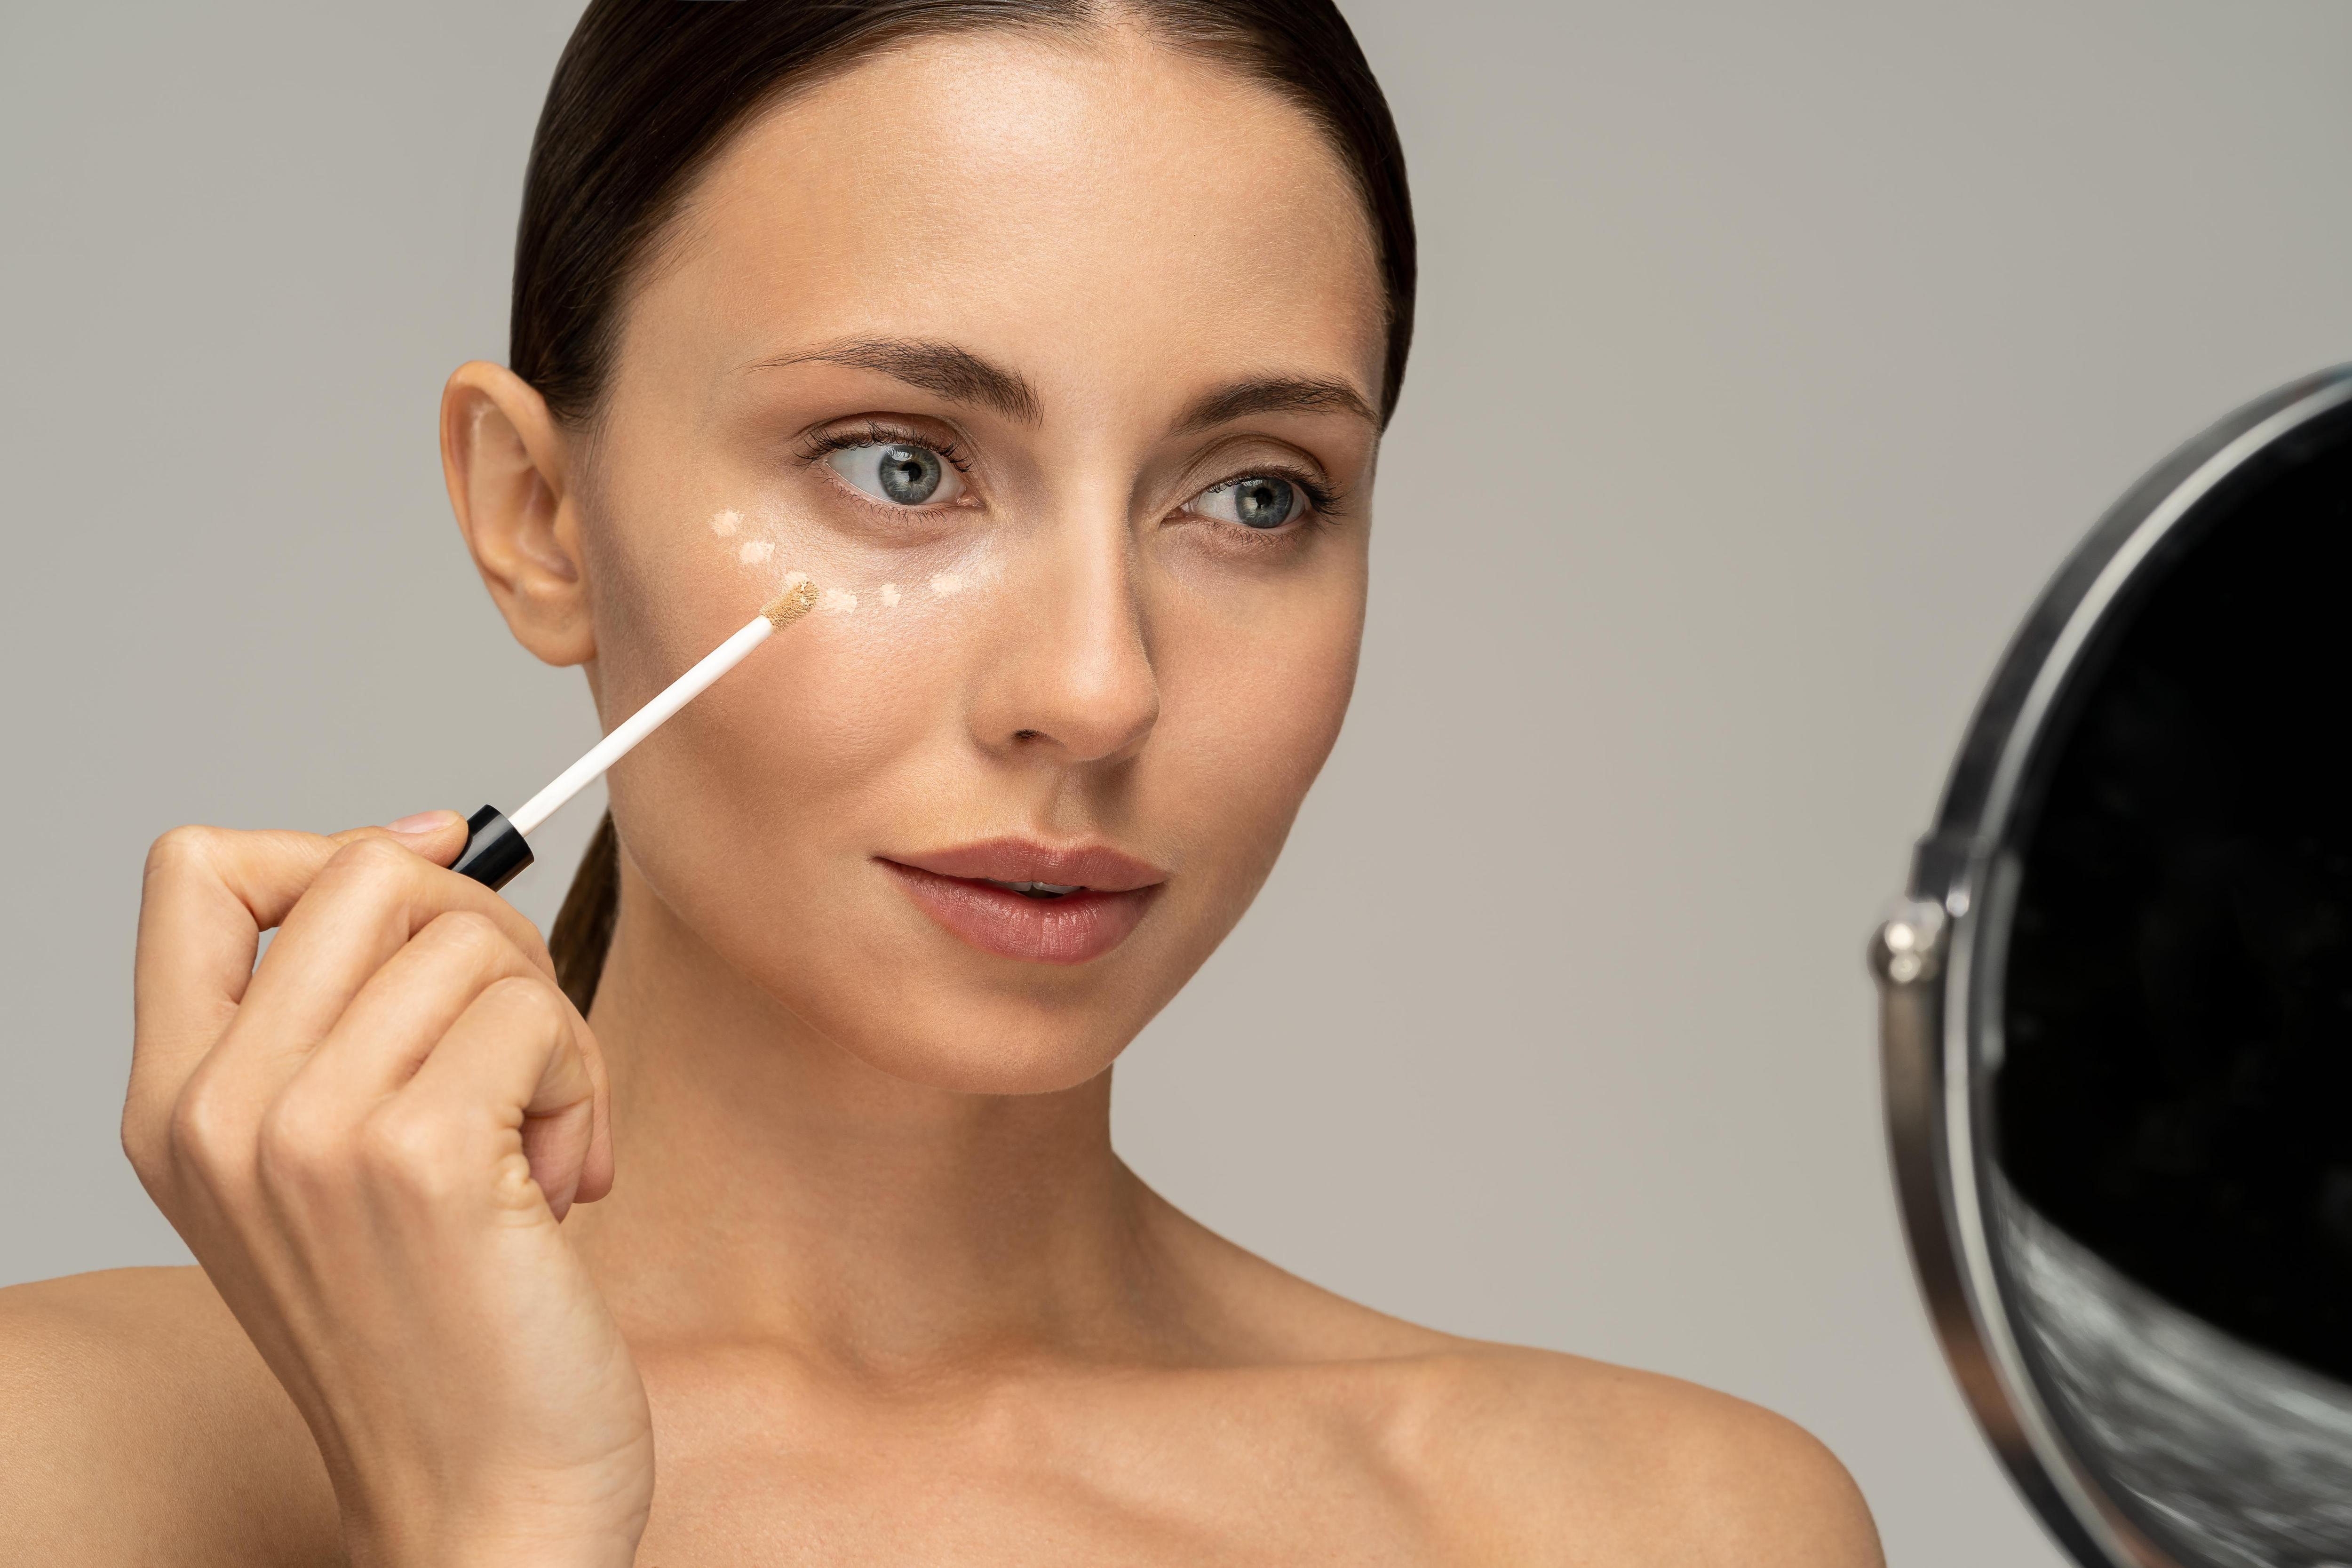 Праймер для макияжа лица - как использовать, чтобы продлить стойкость макияжа | OkBeauty